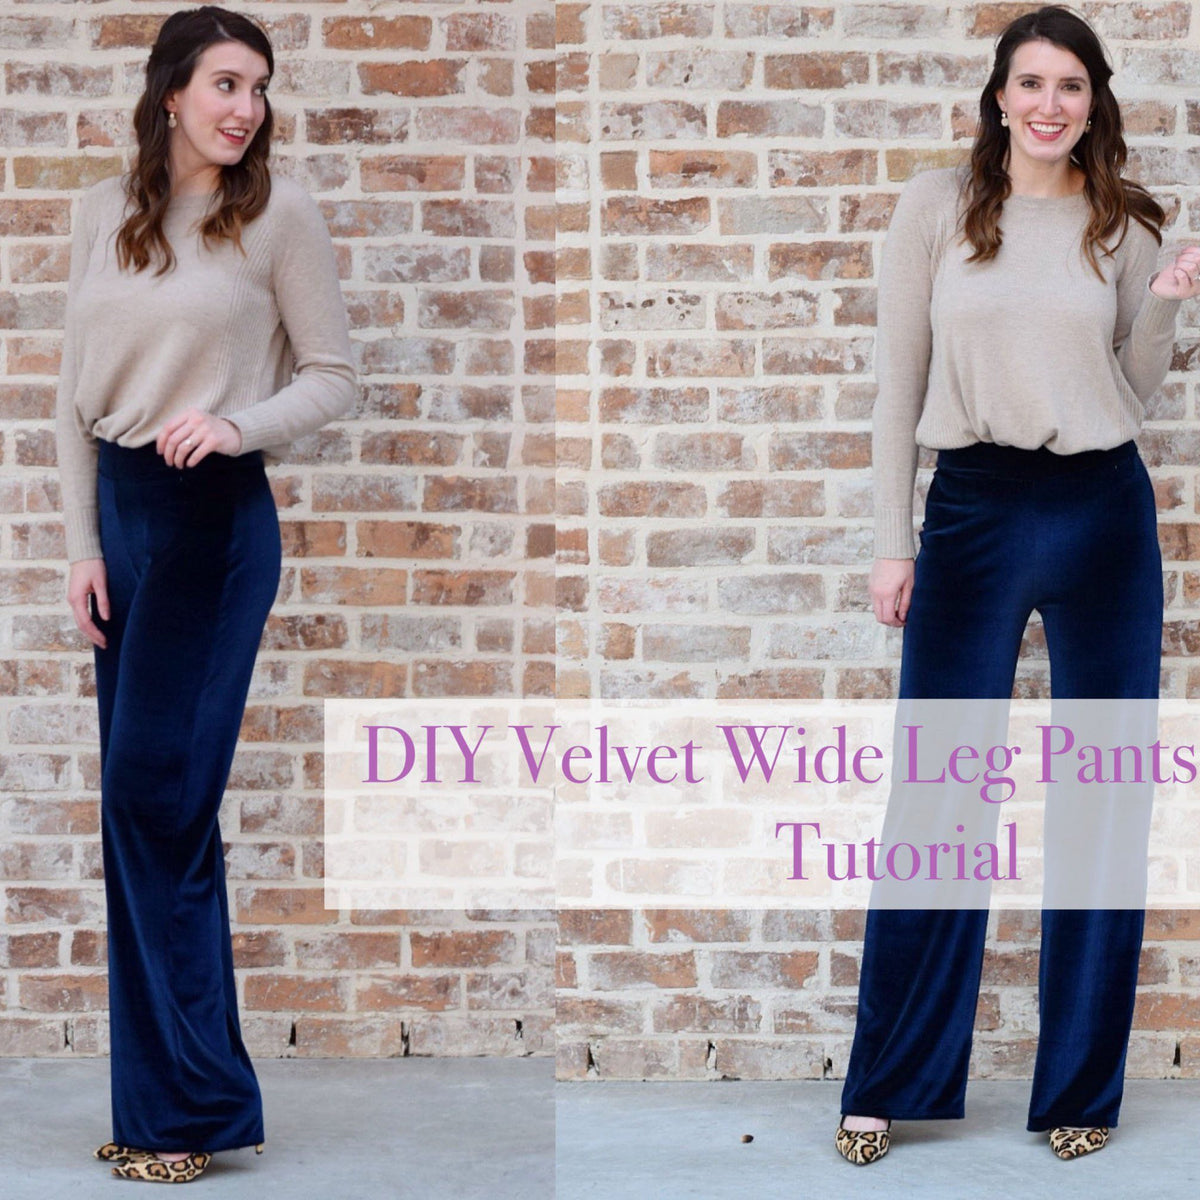 DIY Velvet Wide Leg Pants Sewing Tutorial